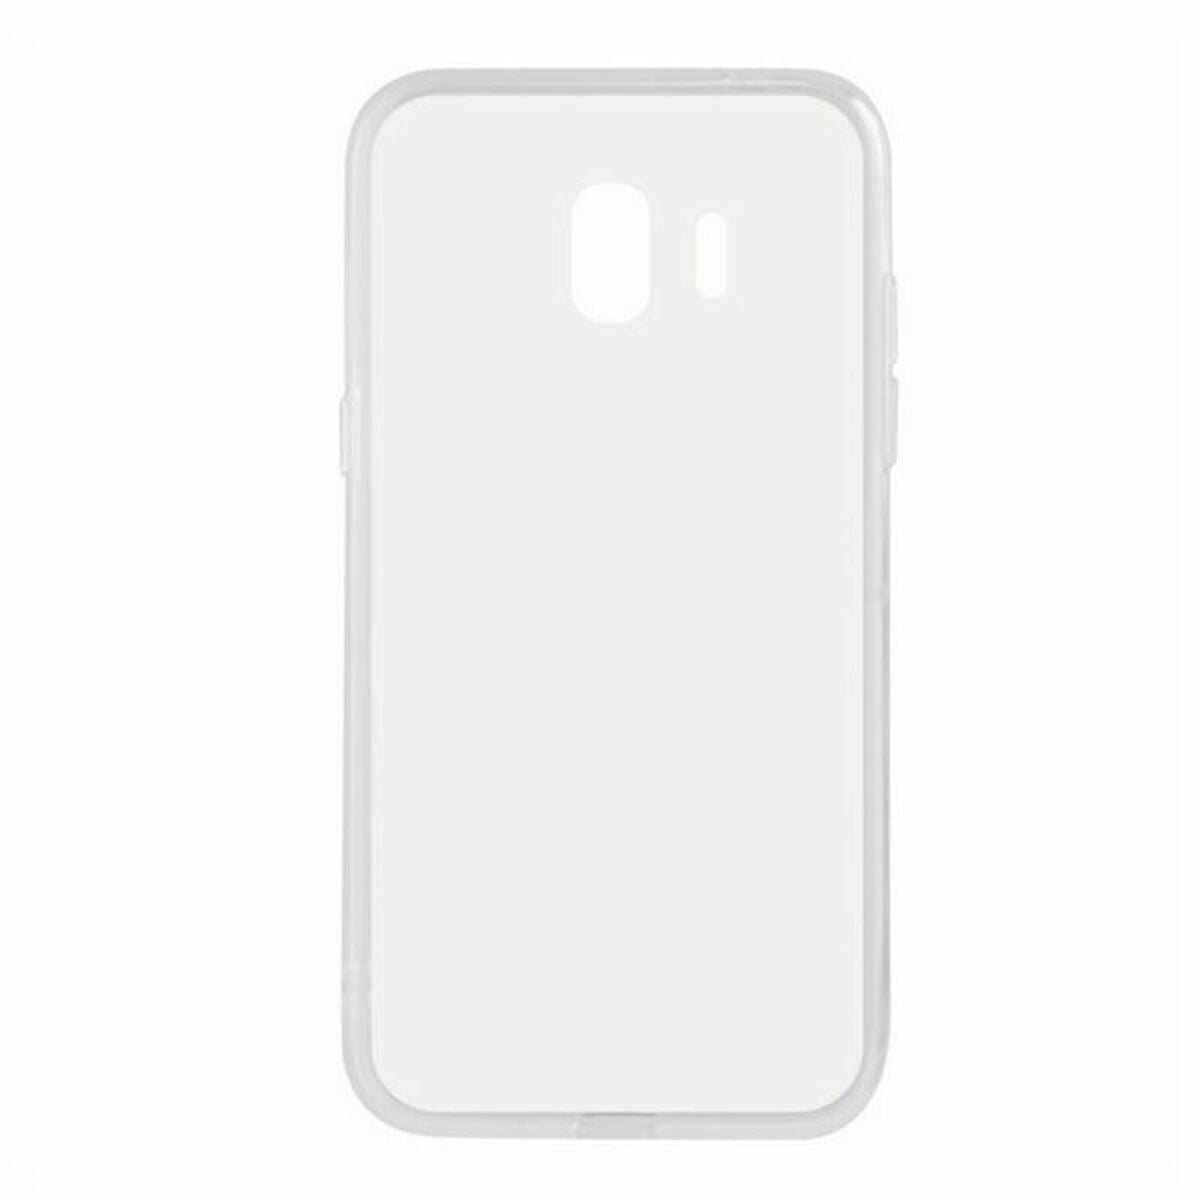 Protection pour téléphone portable Samsung Galaxy J2 Pro 2018 Flex TPU Transparent